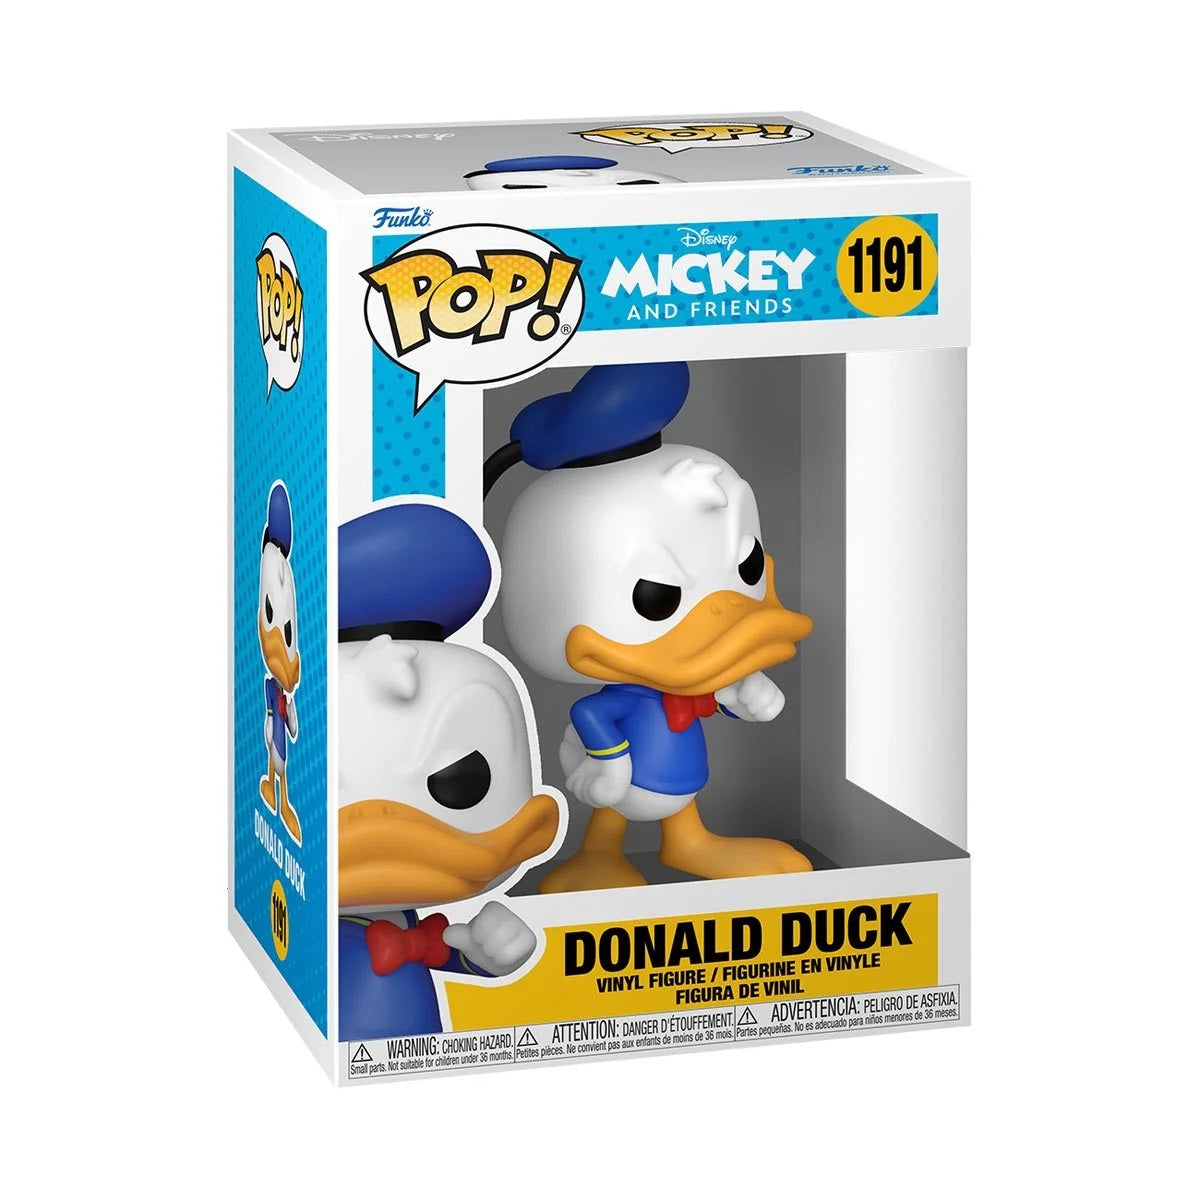 Donald Duck Disney Classics Pop! Vinyl Figure